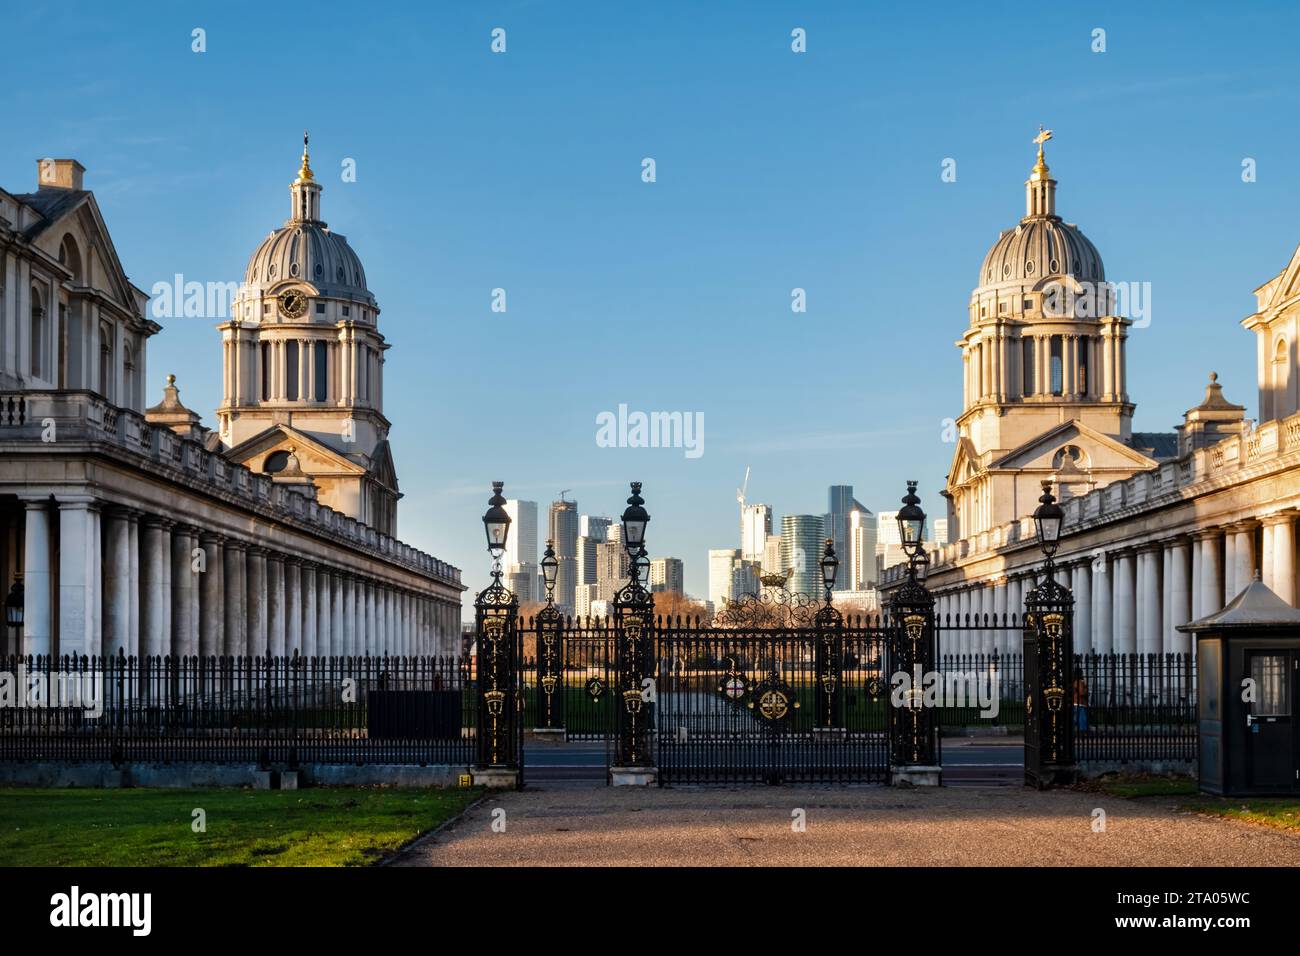 Una vista desde la Casa de la Reina del Old Royal Naval College, Greenwich, Londres, Reino Unido con el centro de negocios Canary Wharf en el fondo Foto de stock